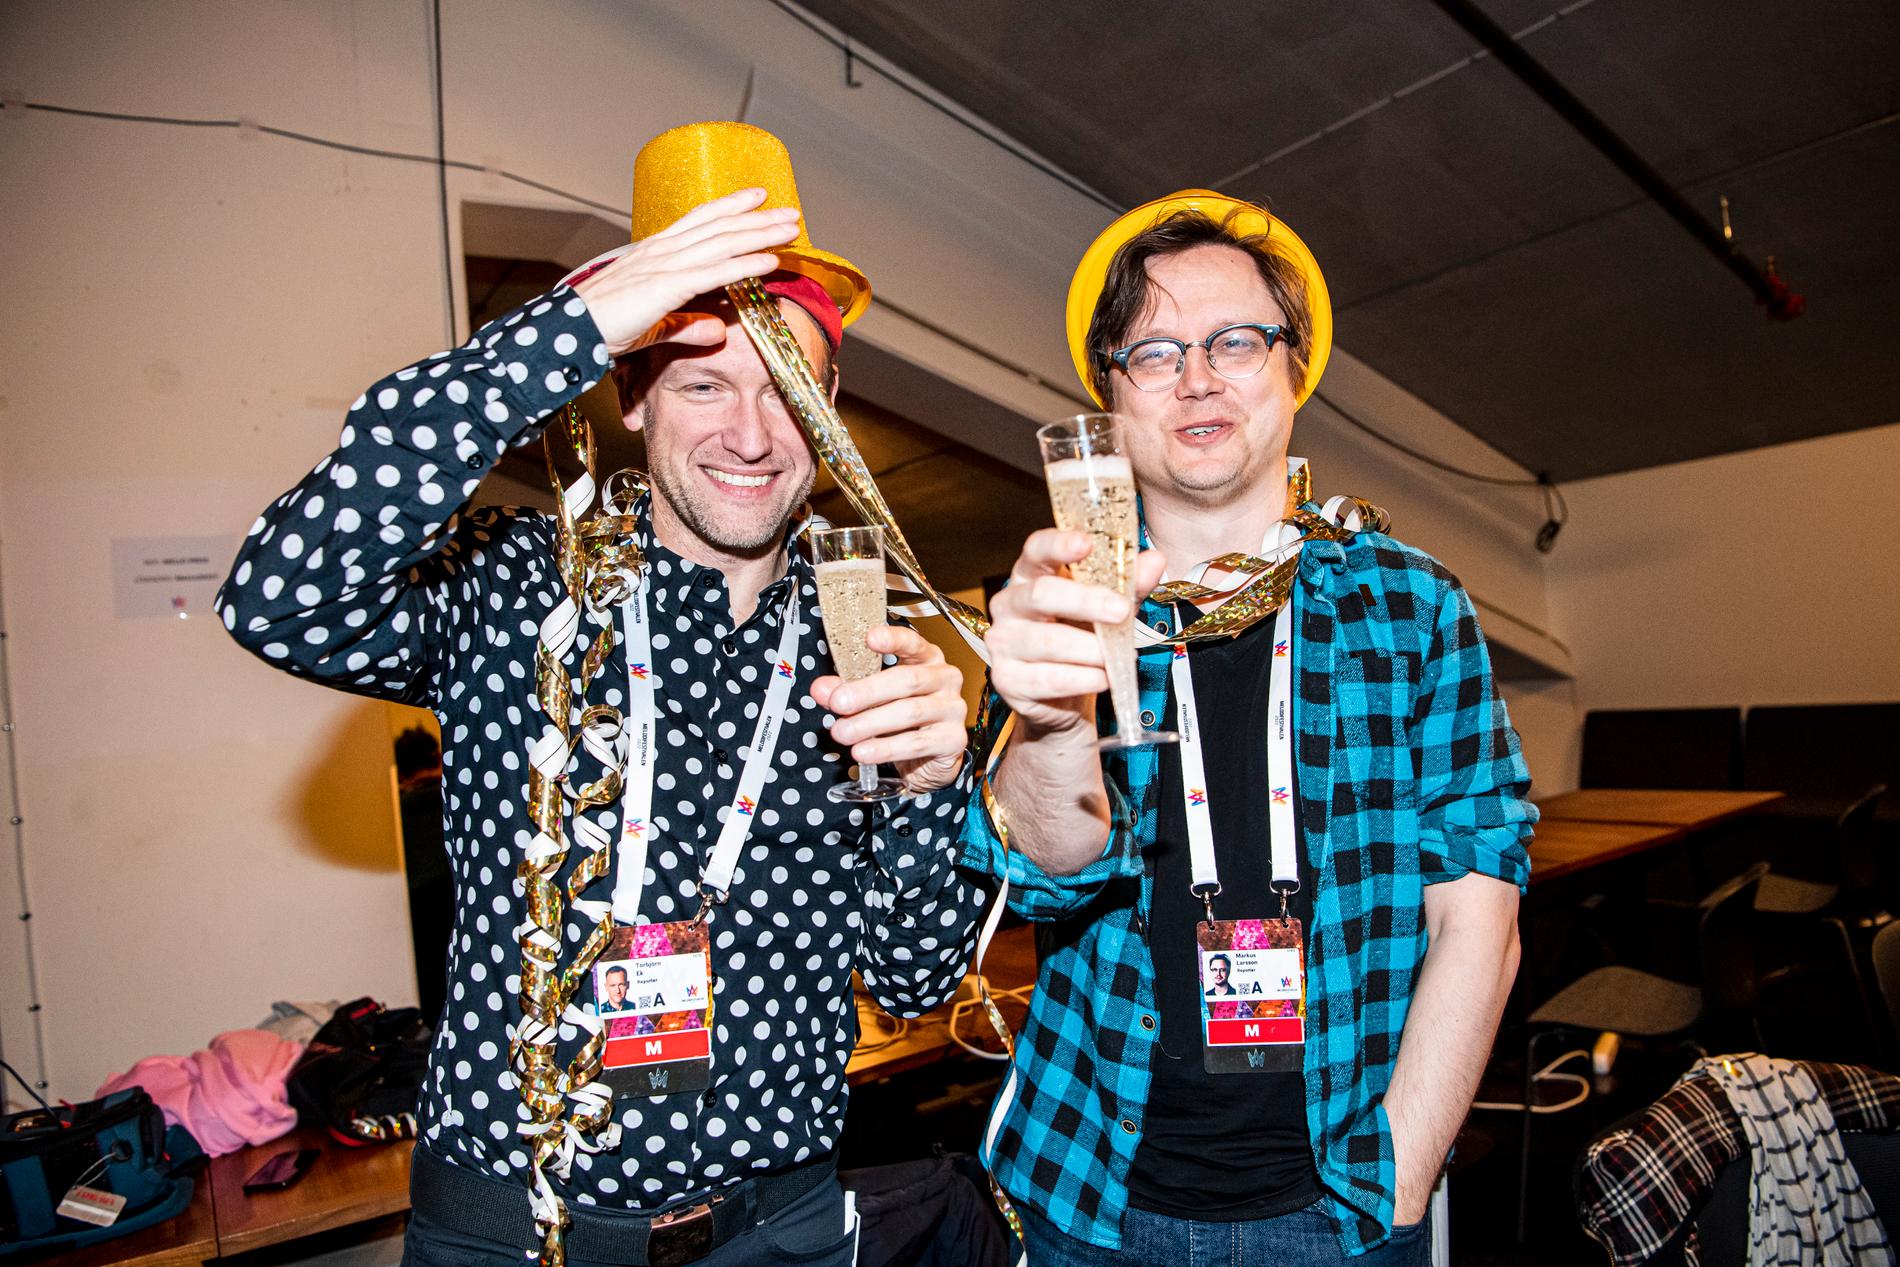 2022 bevakade Aftonbladets Tobbe Ek och Markus Larsson sin 100:a sändning av Melodifestivalen tillsammans. De firades med glada hattar och alkoholfri cider före sändningsstart.